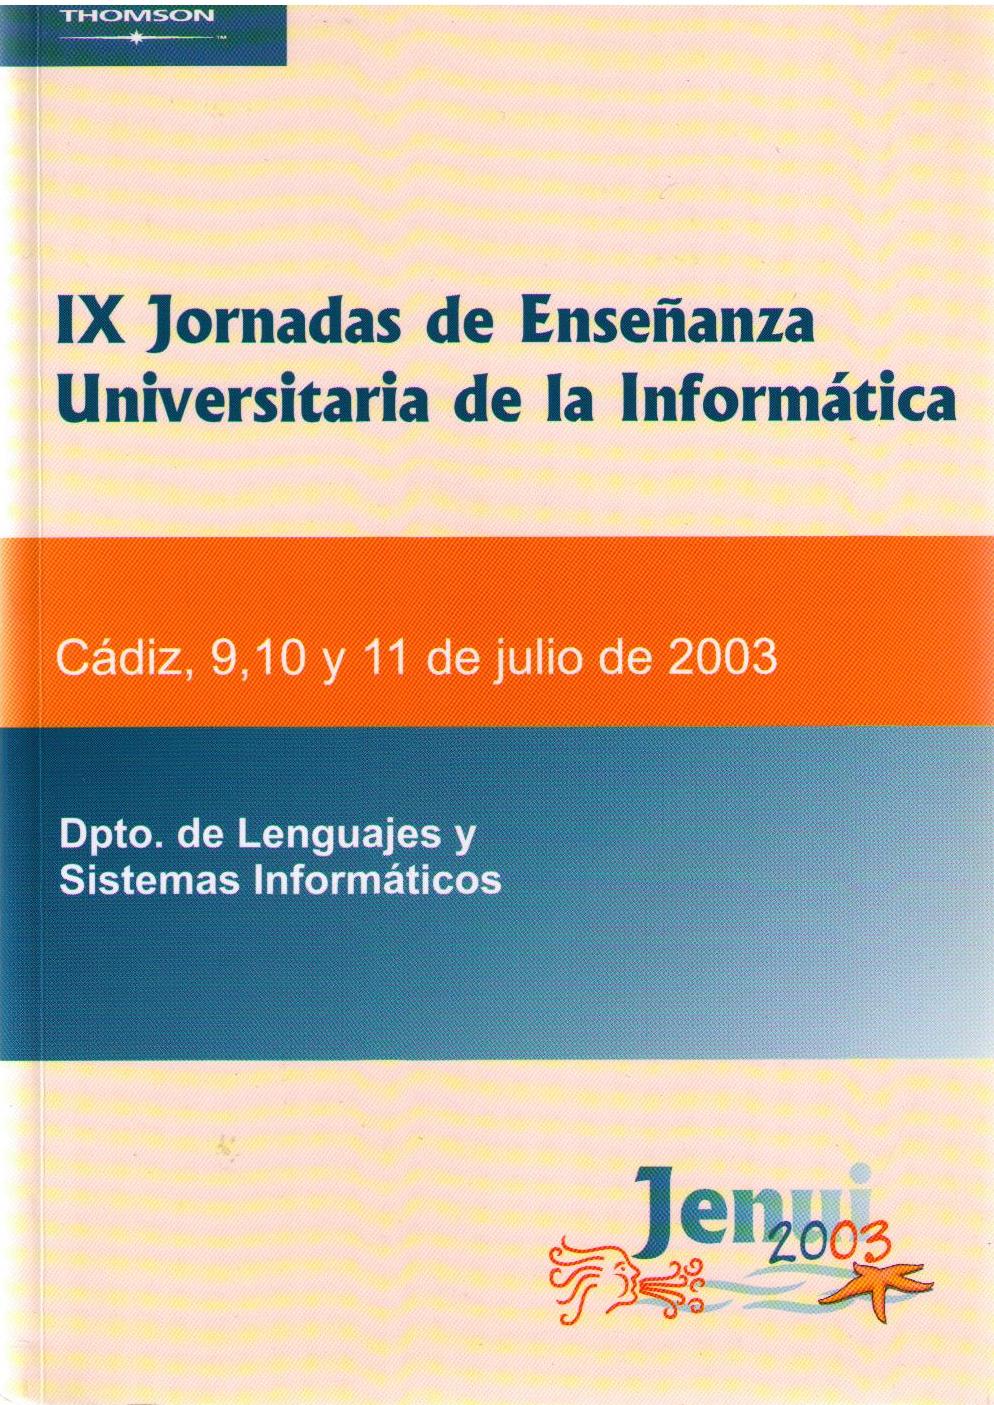 Imagen de portada del libro IX Jornadas de Enseñanza Universitaria de la Informática